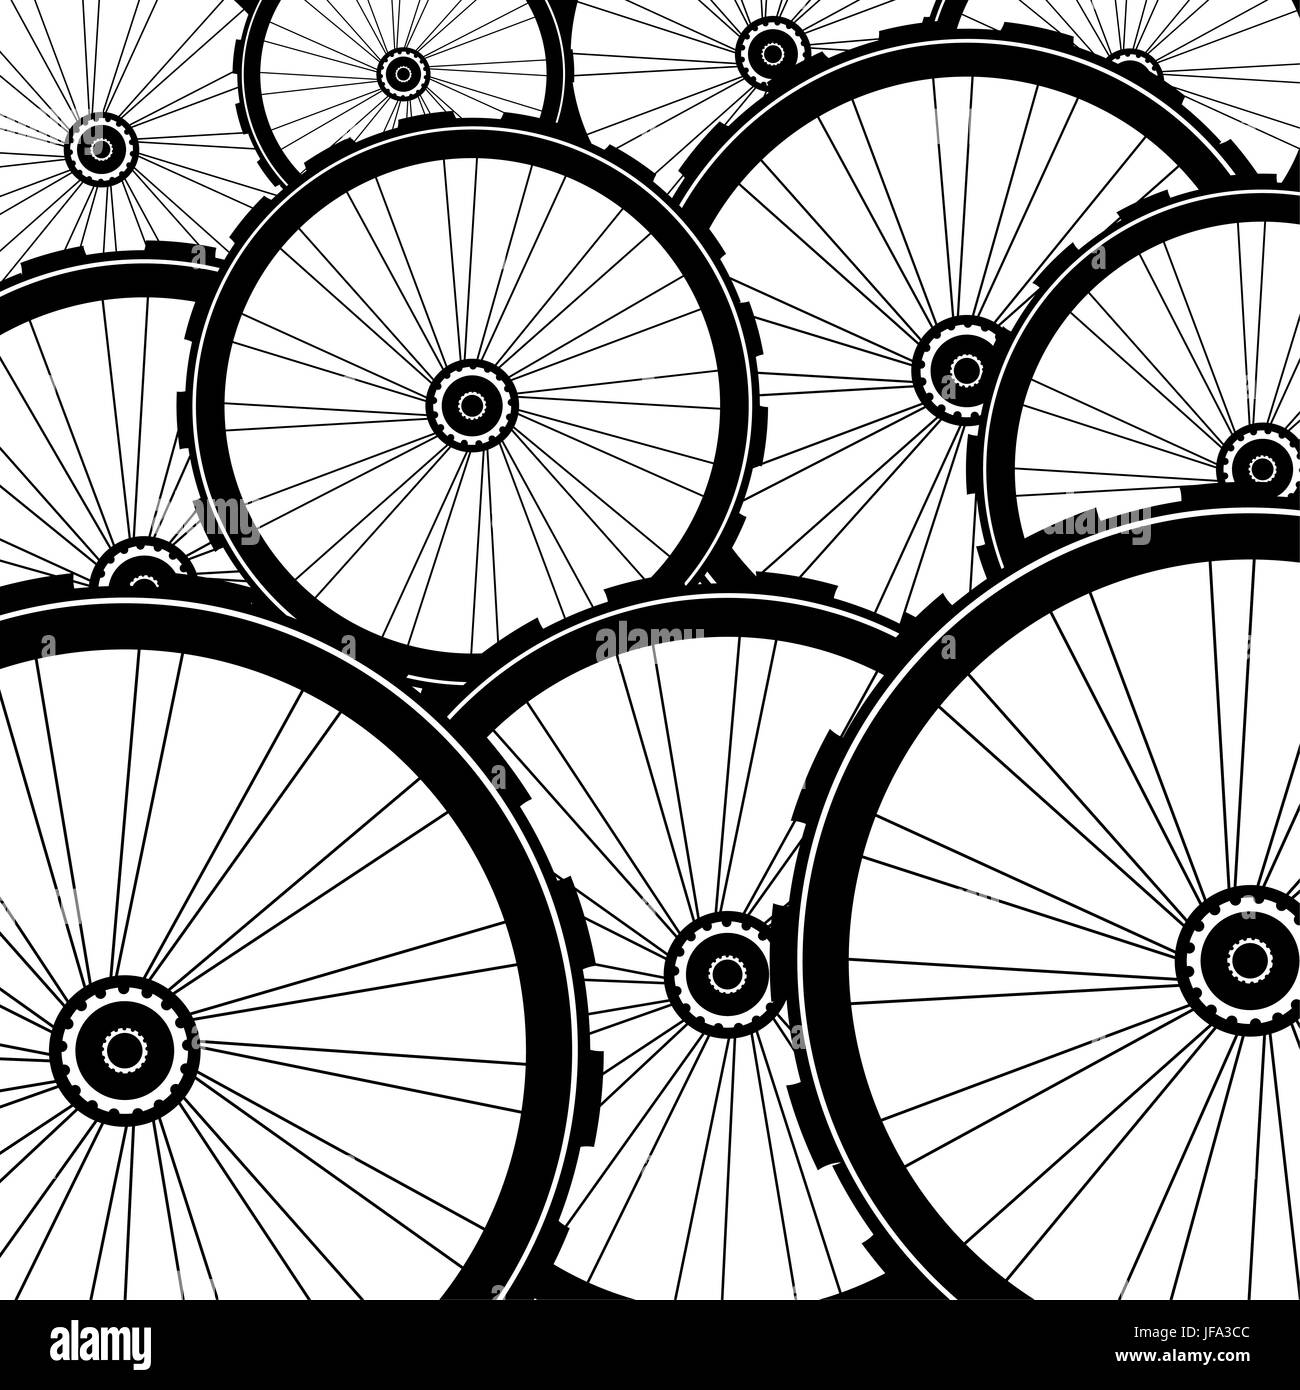 Fahrradspeichen Schwarzweiß-Stockfotos und -bilder - Alamy